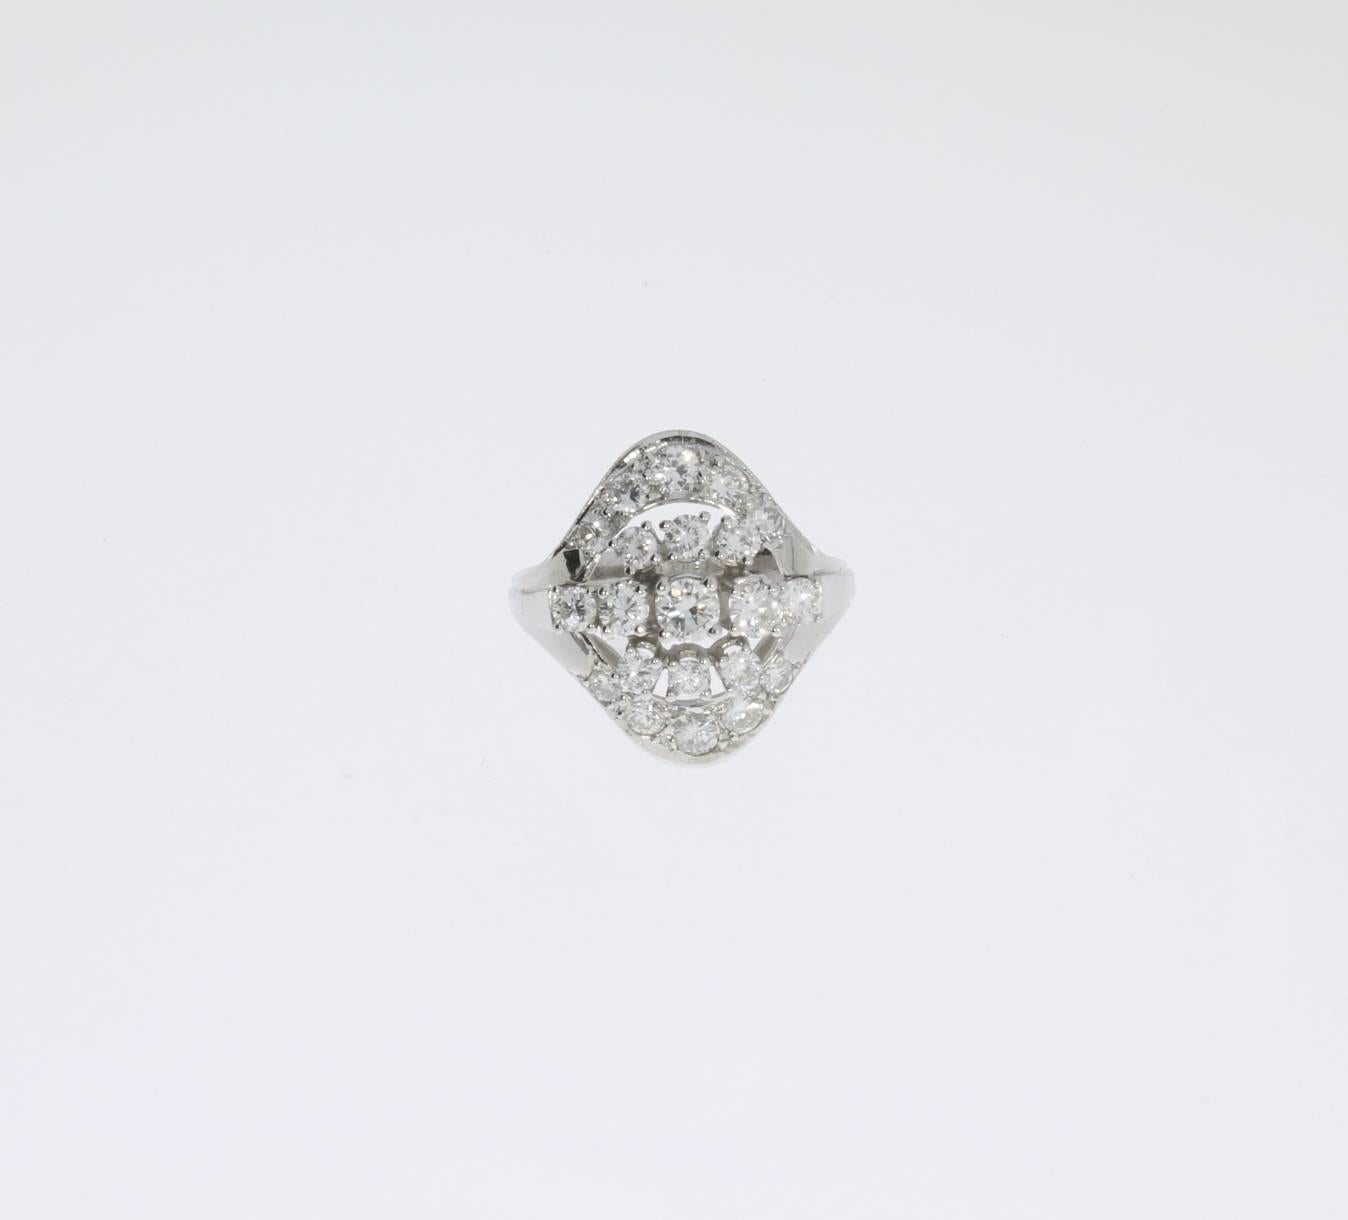 Europa, 1950er Jahre. Bestehend aus 21 Diamanten im Brillantschliff mit einem Gewicht von ca. 1,42 ct. Montiert in 14 K Weißgold. Innen gestempelt mit einem Feingehalt von 585. Gewicht: 5,4 g. Abmessungen: ca. 0,79 x 0,67 ( 2 x 1,7 cm ). 
Ringgröße: